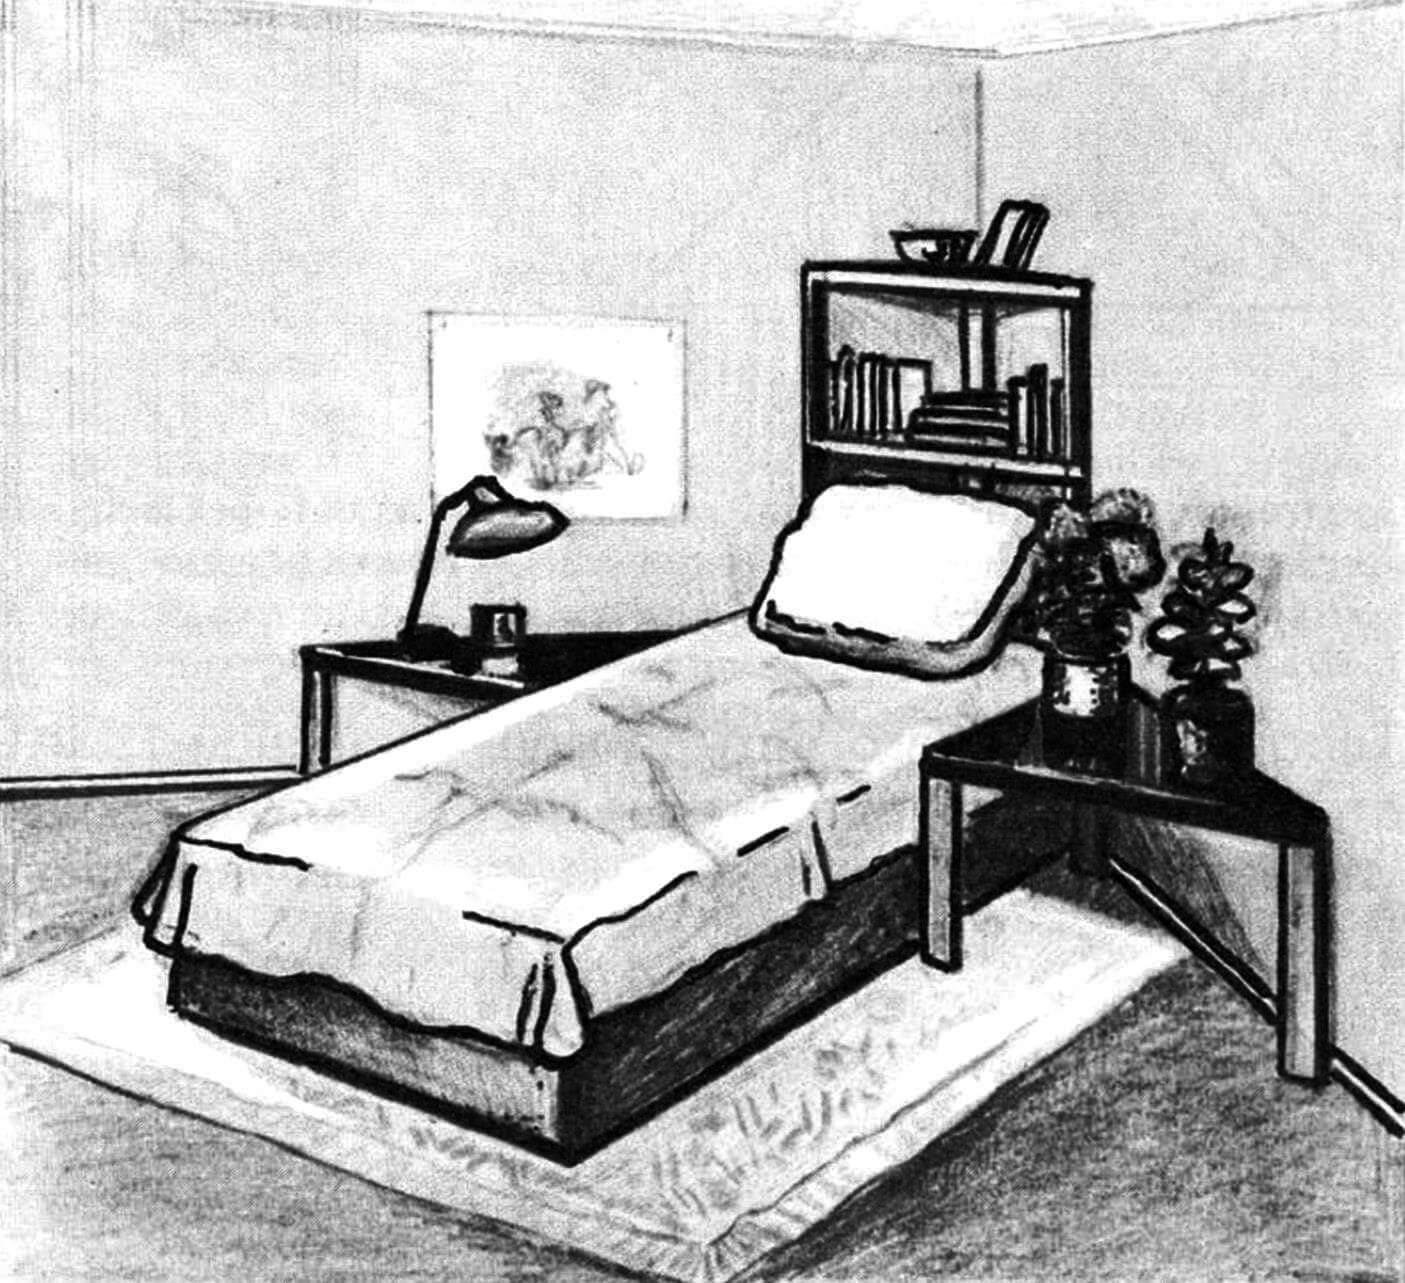 Уголок интерьера с треугольной мебелью: угловым книжным шкафом и прикроватными тумбочками.